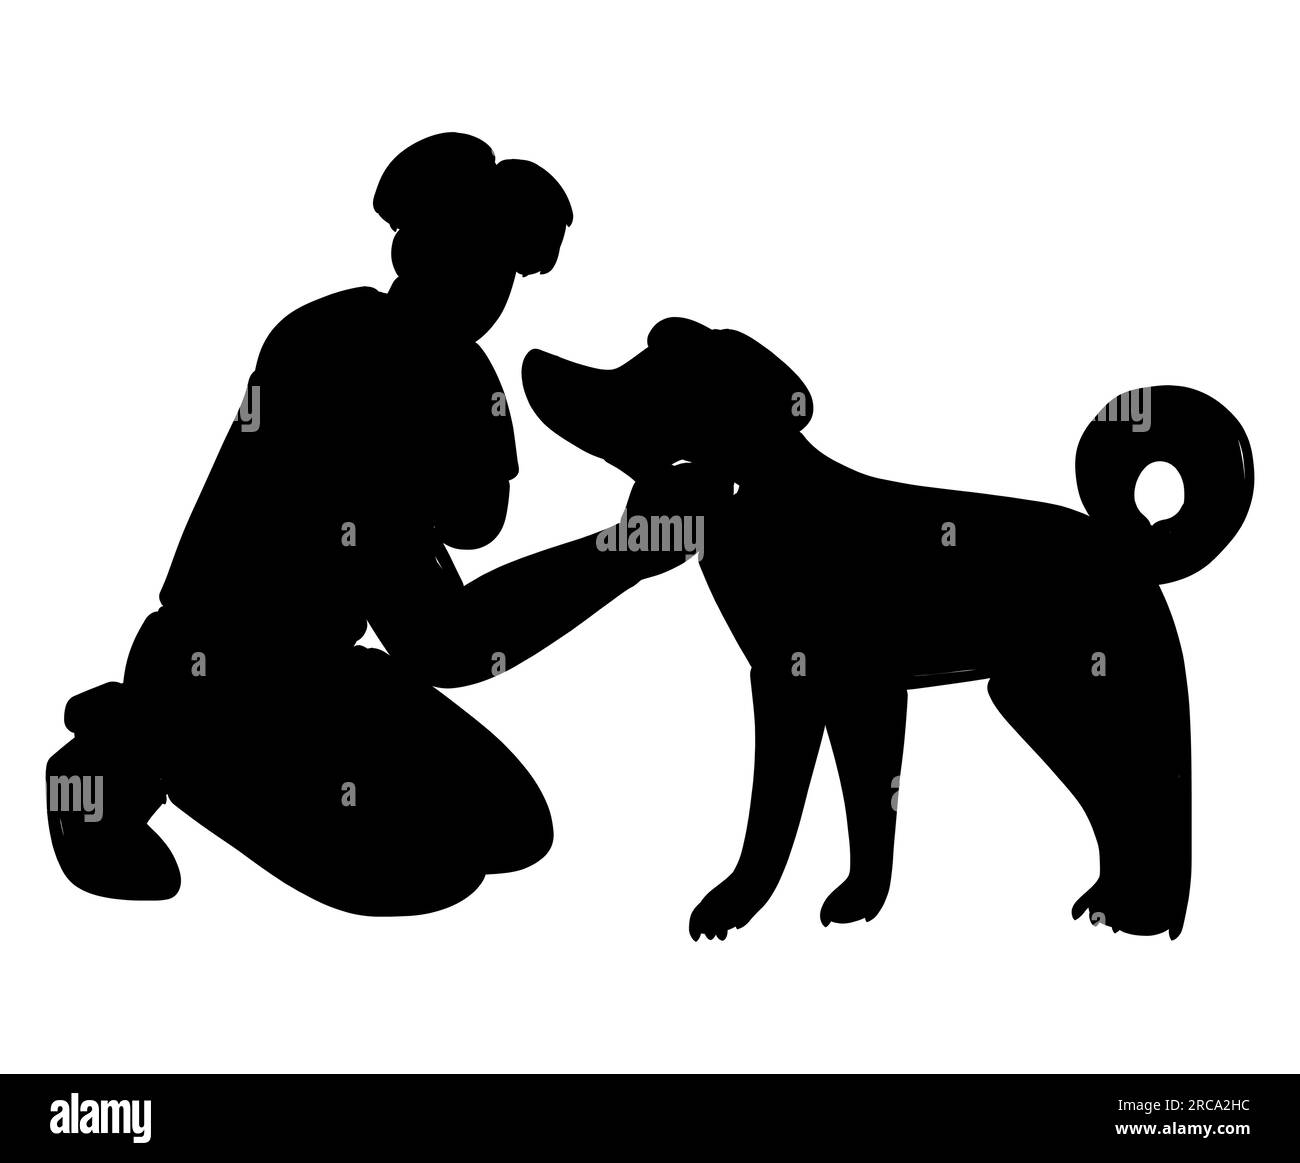 Schwarze Silhouette eines männlichen Tierbesitzers, der seinen Hund liebt, ein Mann, der mit seinem Hundetier spielt, Tieradoptionskonzept, Cartoon-Vektor isoliert auf Weiß Stock Vektor